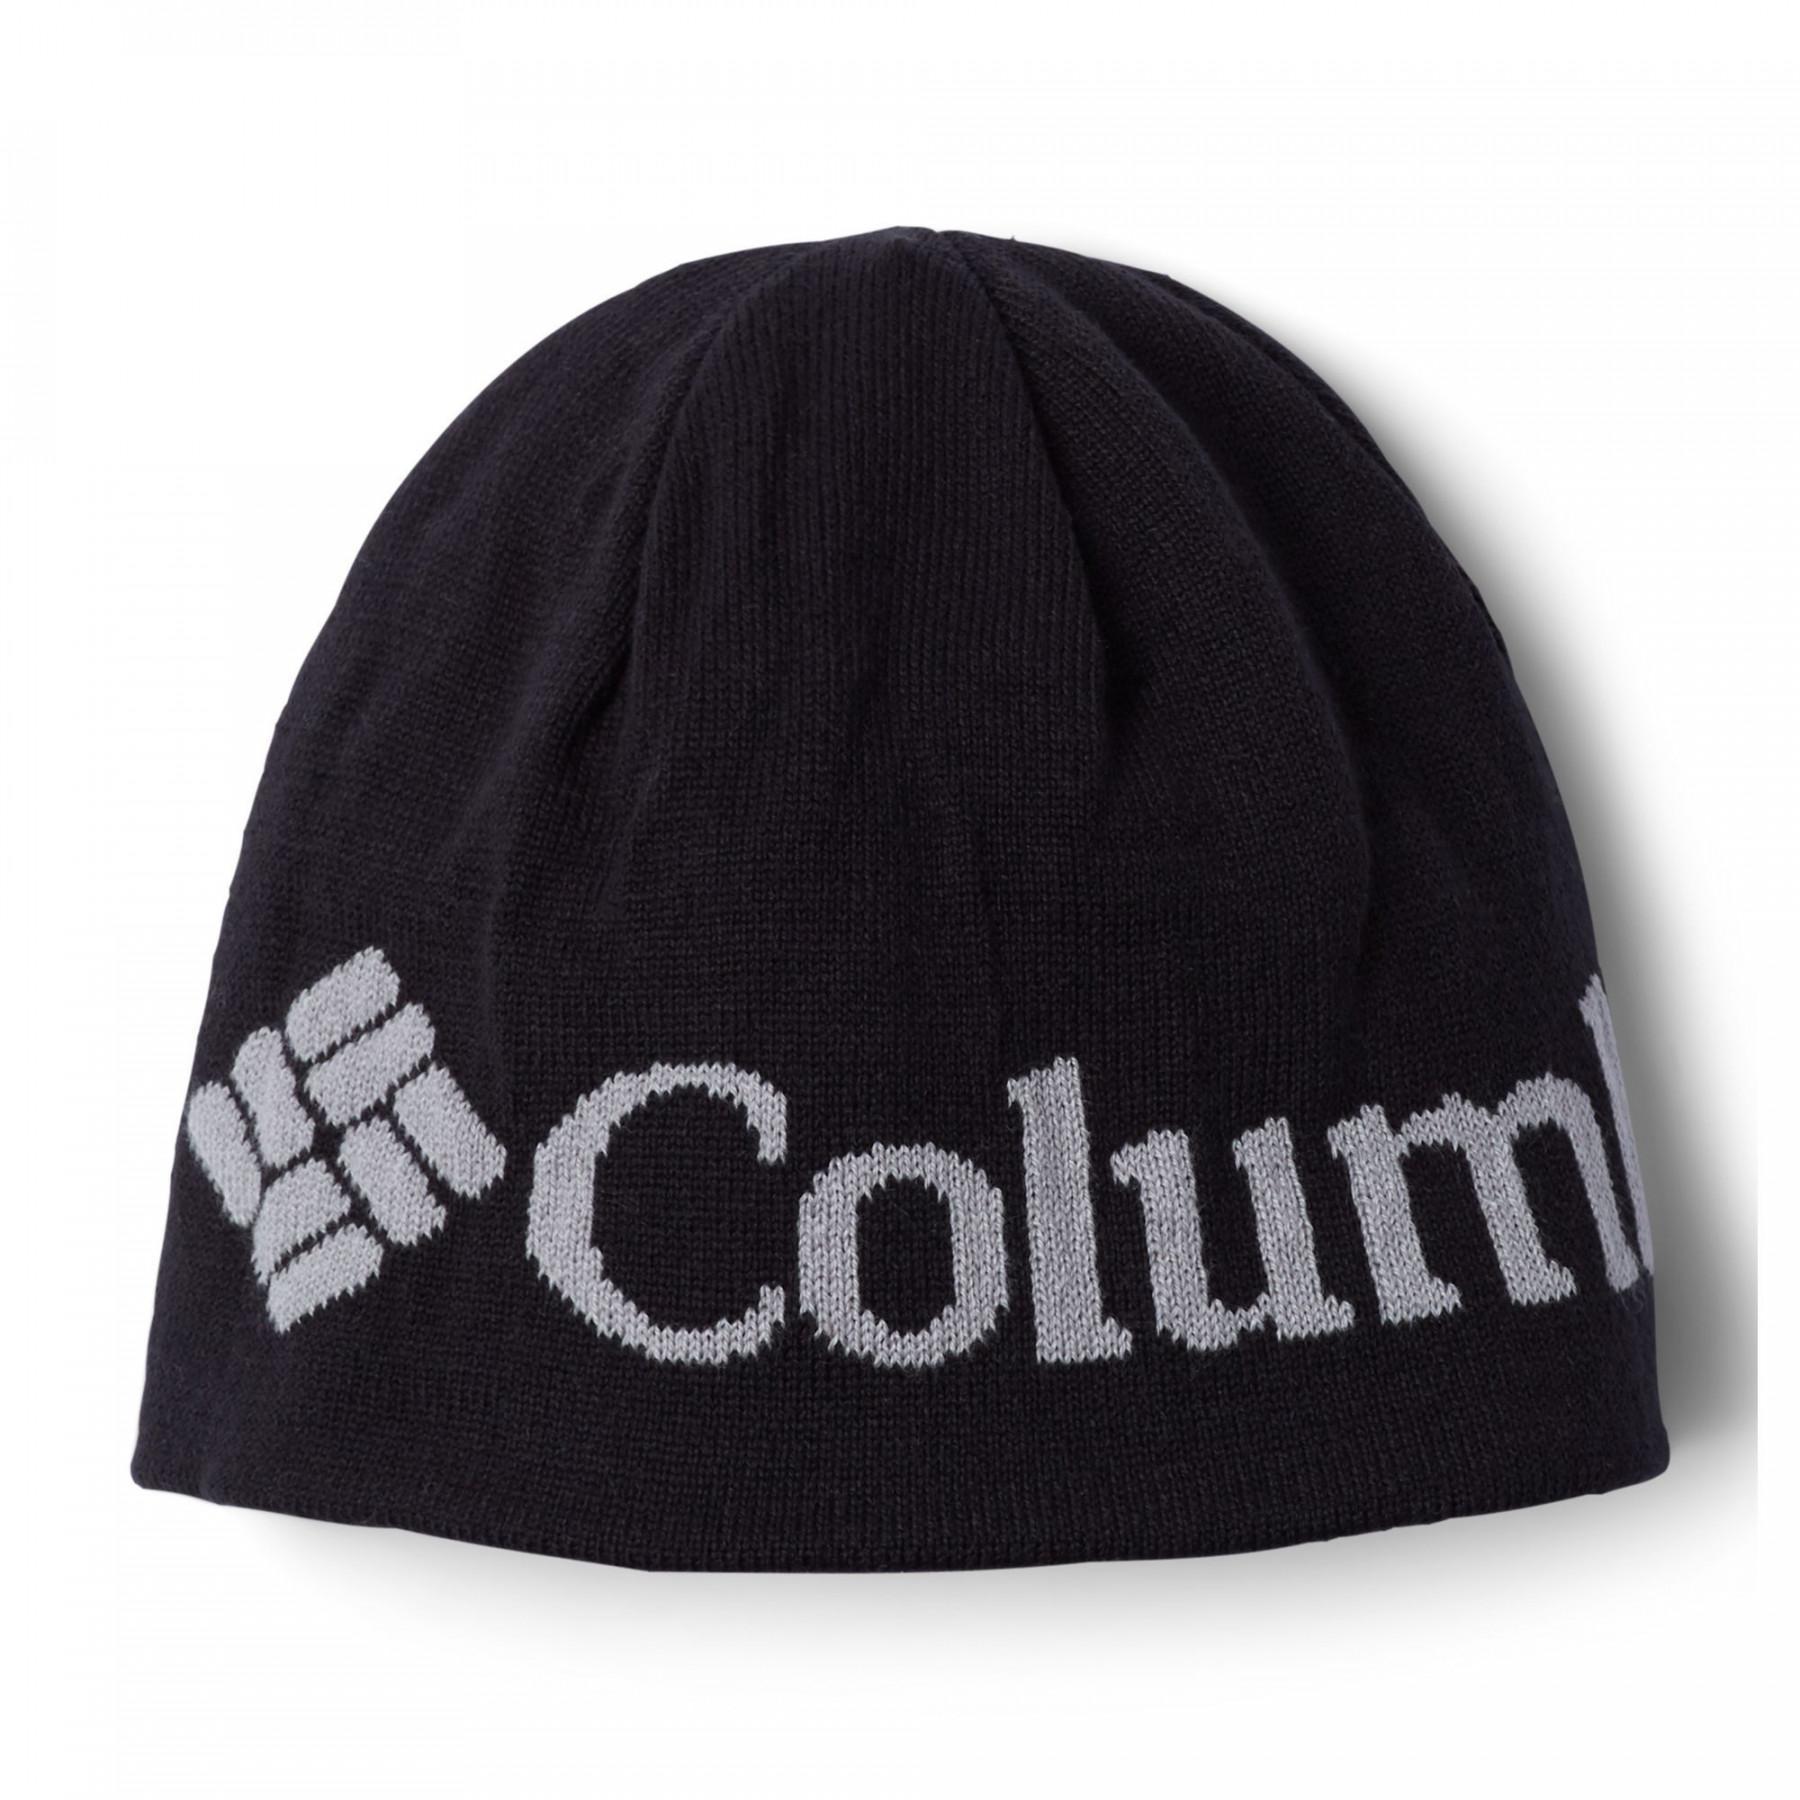 Children's hat Columbia Urbanization Mix